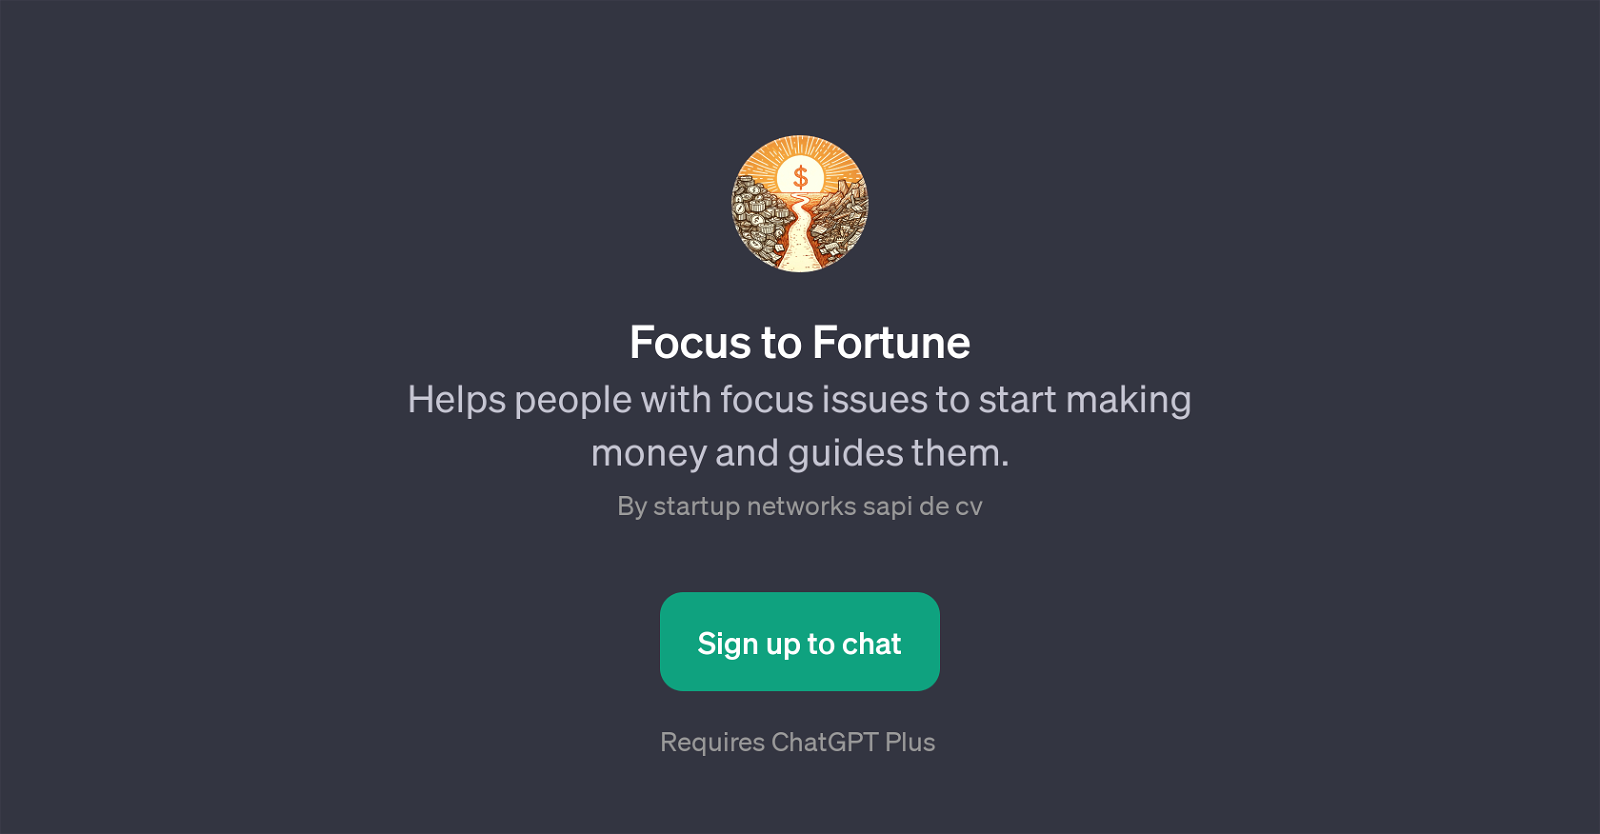 Focus to Fortune website